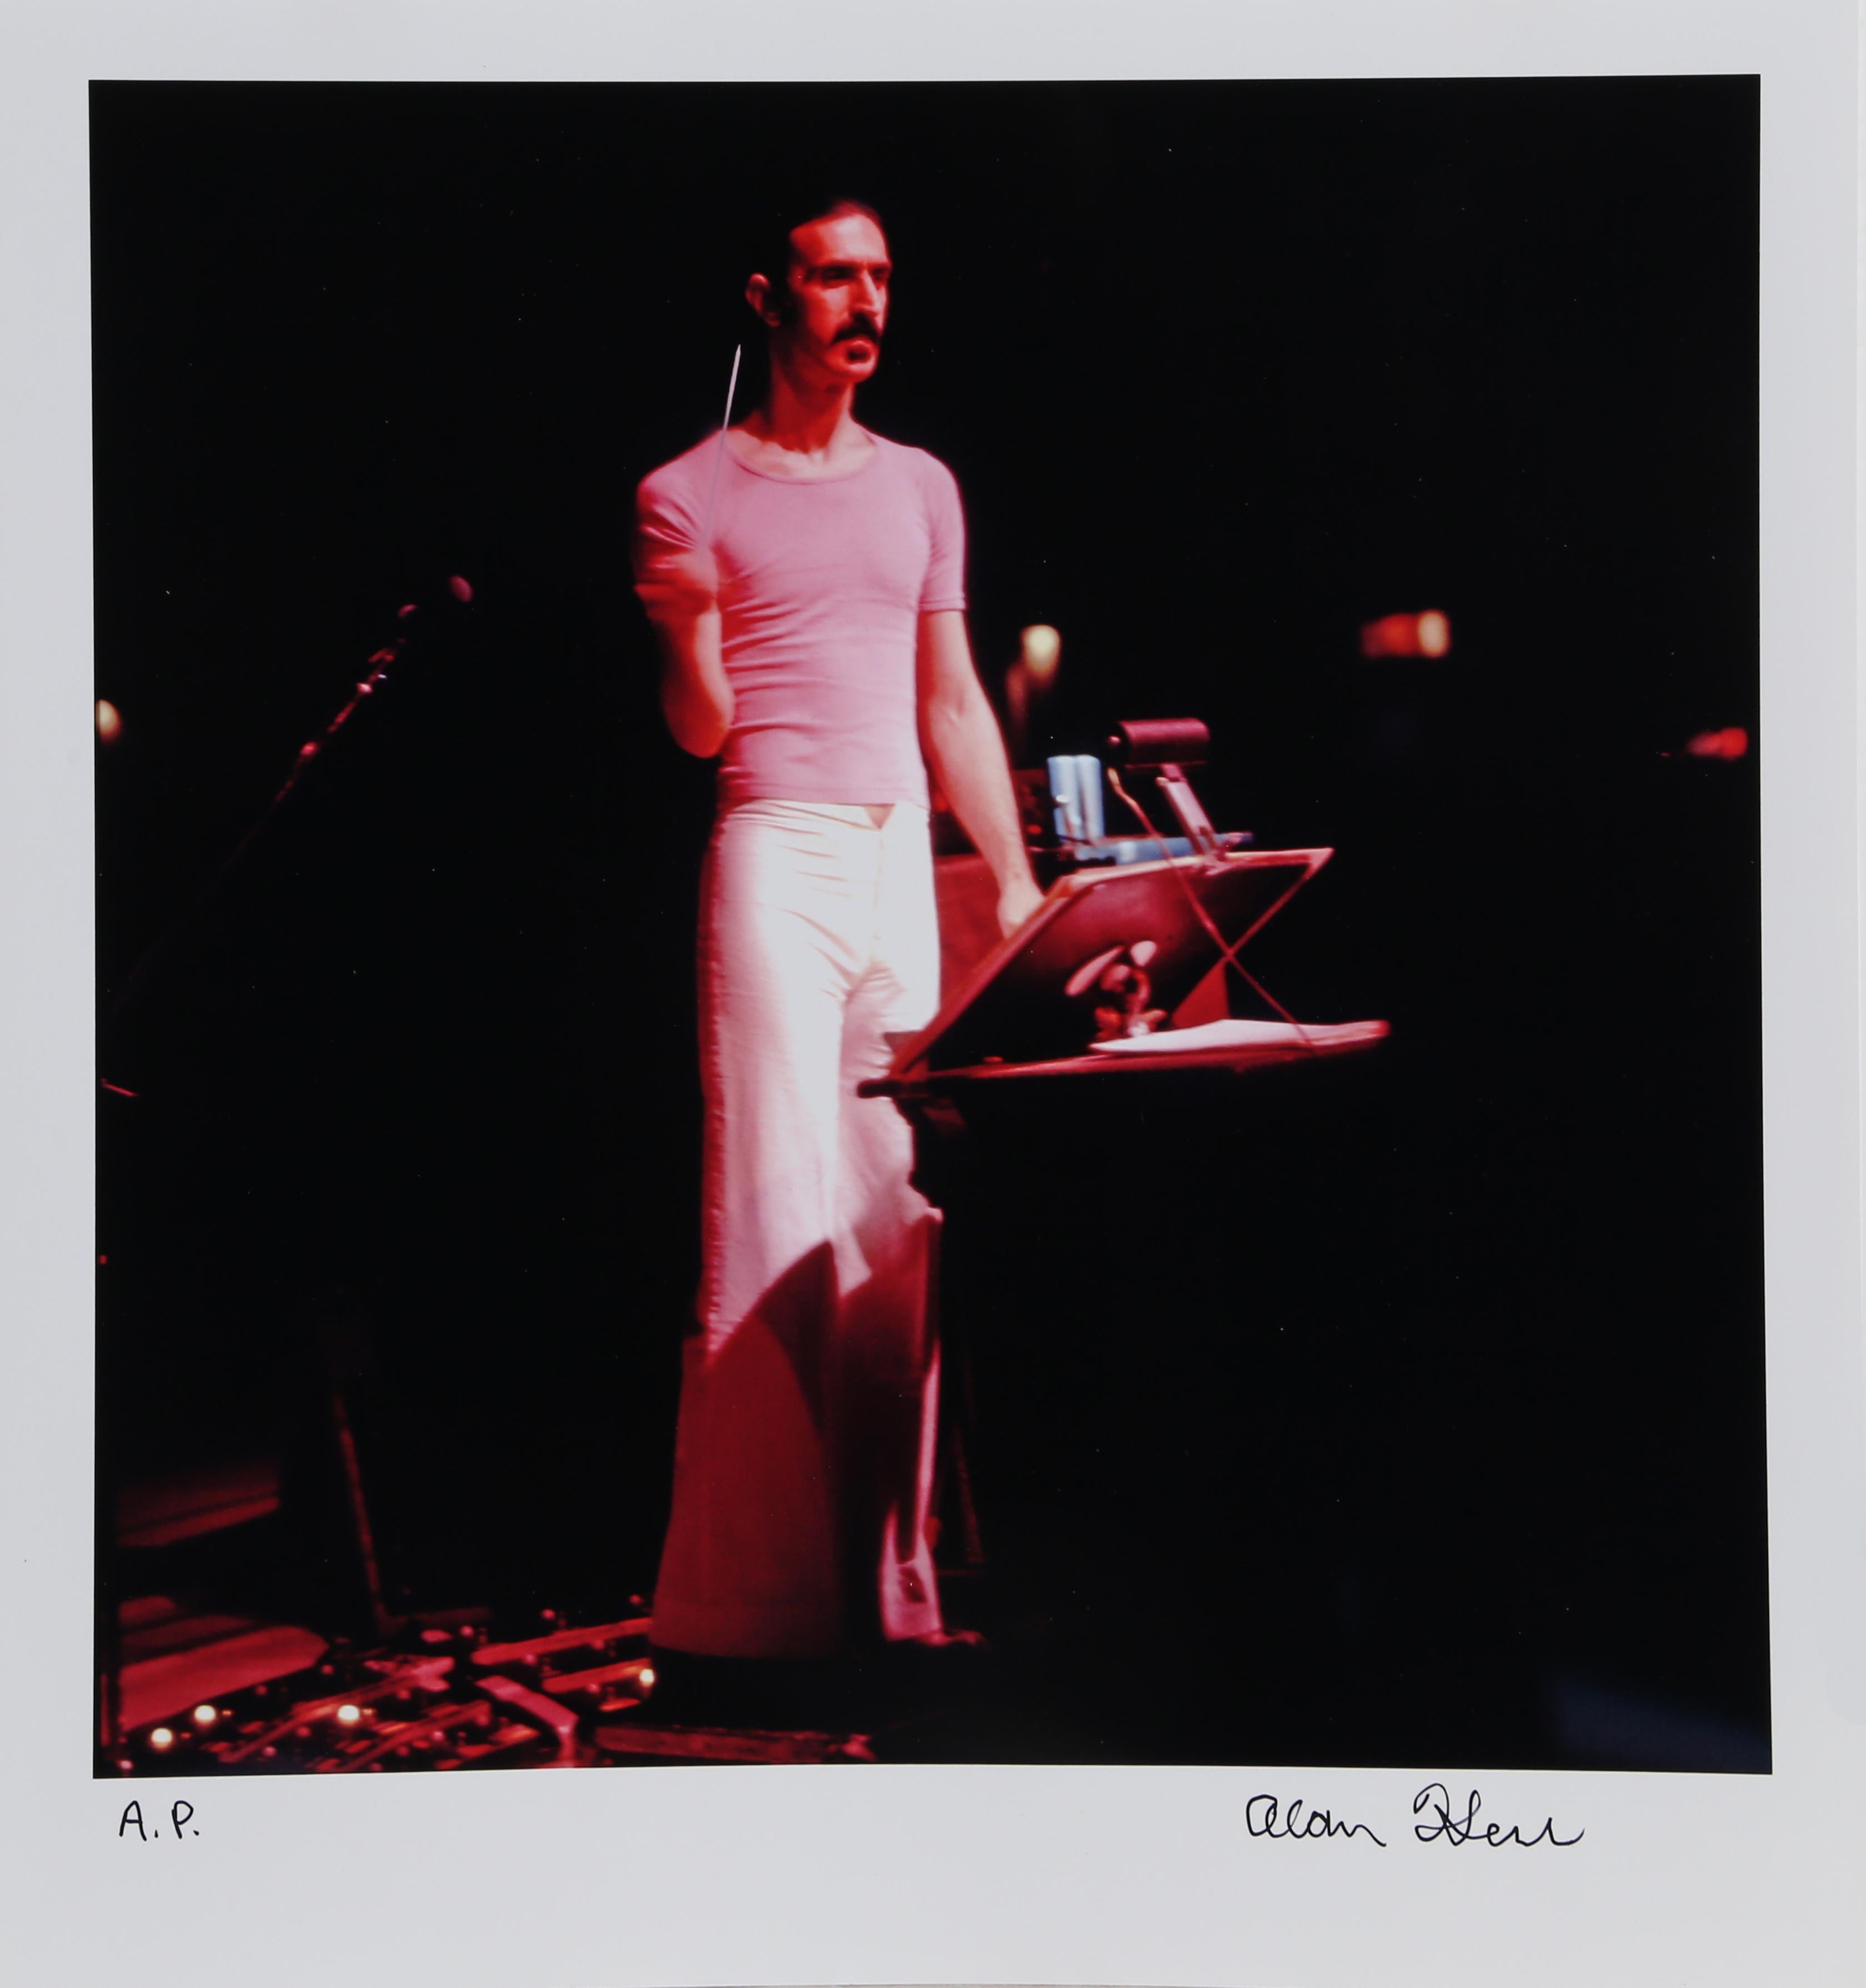 Artistics : Alan Herr, Américain (1954 - )
Titre : Zappa 1
Support : Photographie numérique imprimée, signée au marqueur permanent
Edition : AP
Taille : 13.5 x 13 pouces